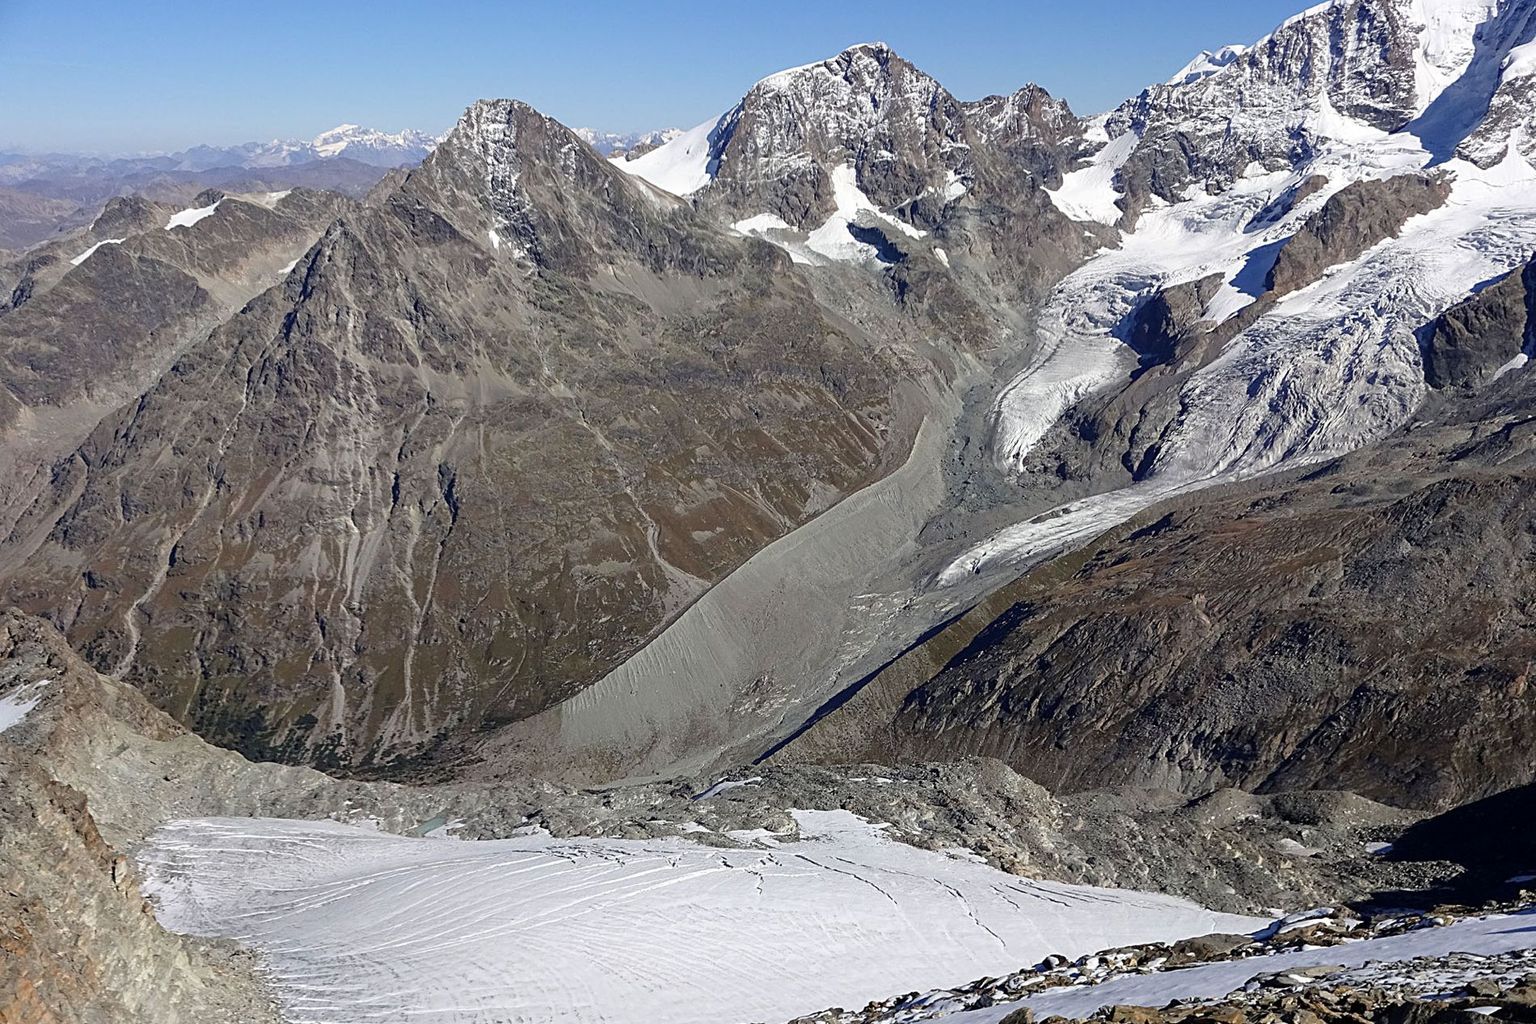 Der Gletscher Vadret da Tschierva im Engadin (September 2016). Der starke Rückgang des Eises zeigt sich eindrücklich in der Bildmitte (Seitenmoränen). Seit 1850 ist gut die Hälfte der Gletschermasse in der Schweiz weggeschmolzen. Der Rückgang des Eises legt Schutt und Geröll frei und lässt neue Seen entstehen – dies verändert die Ästhetik der Landschaft. Falls wir das Klima weiterhin so beeinflussen wie bisher, werden im Jahr 2100 nur noch 20 bis 30% der heutigen Eismassen übrigbleiben. Die Schneesaison wird sich um mehrere Wochen verkürzen und die Schneegrenze um mehrere Hundert Meter ansteigen. Infrastrukturen wie Skilifte, die heute auf Permafrostböden stehen, werden ihren stabilen Untergrund verlieren. Auf dem Jungfraujoch auf rund 3500 m ü. M. schmilzt der Permafrost bereits seit einigen Jahren im Sommer. Der Verlust an Schnee und Felsstabilität wird die (Schnee-) Sicherheit in Bergregionen und den Tourismus beeinträchtigen und zu Anpassungen zwingen. Auch die Pflanzenwelt wird sich anpassen müssen – so droht beispielsweise die Fichte aus dem Mittelland zu verschwinden.